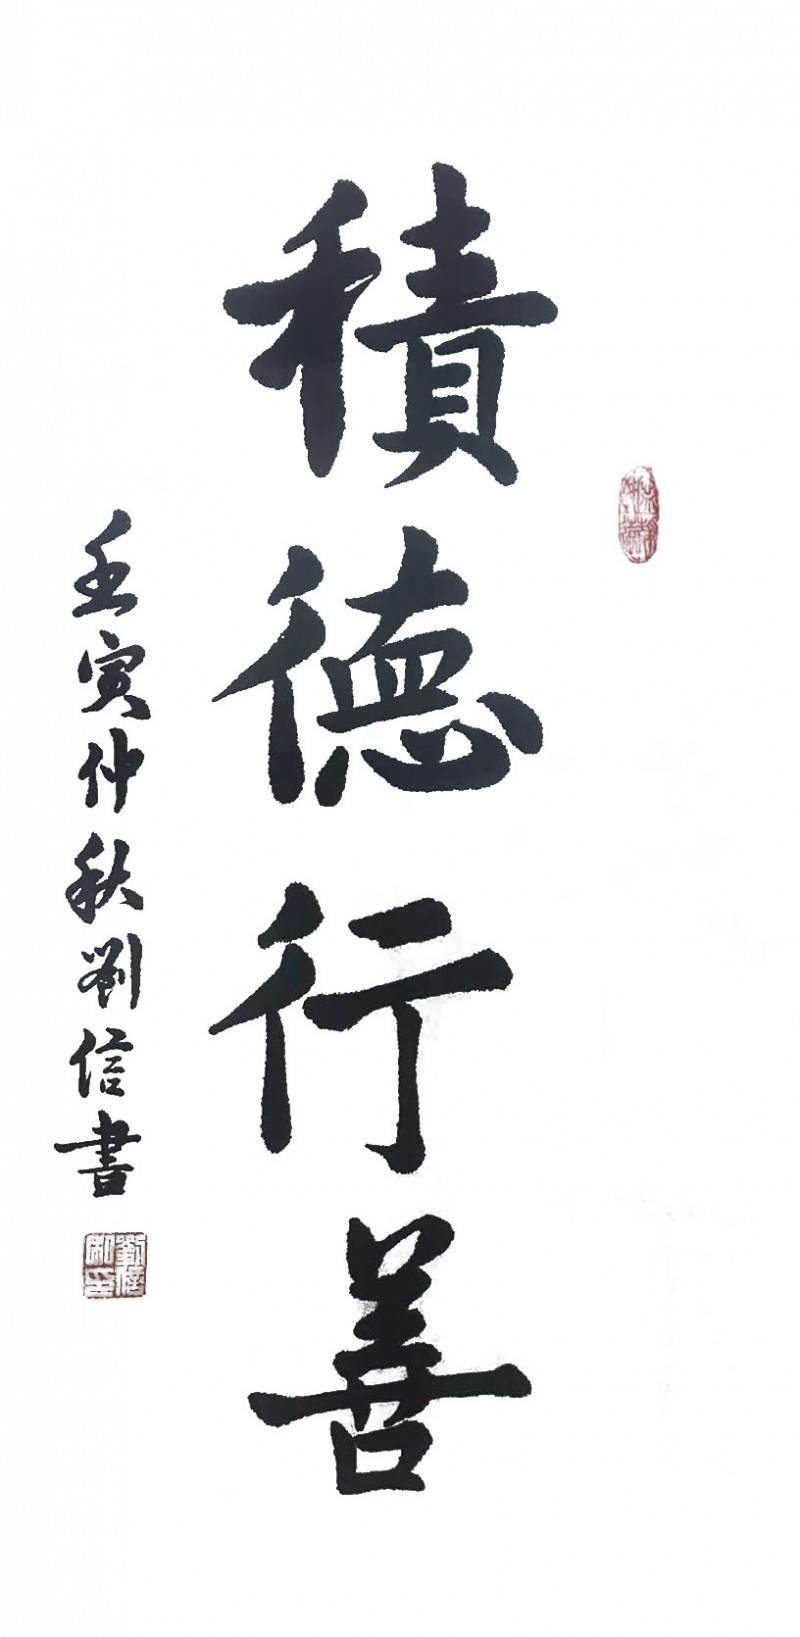 刘信——中宣盛世国际书画院会员、著名书画家